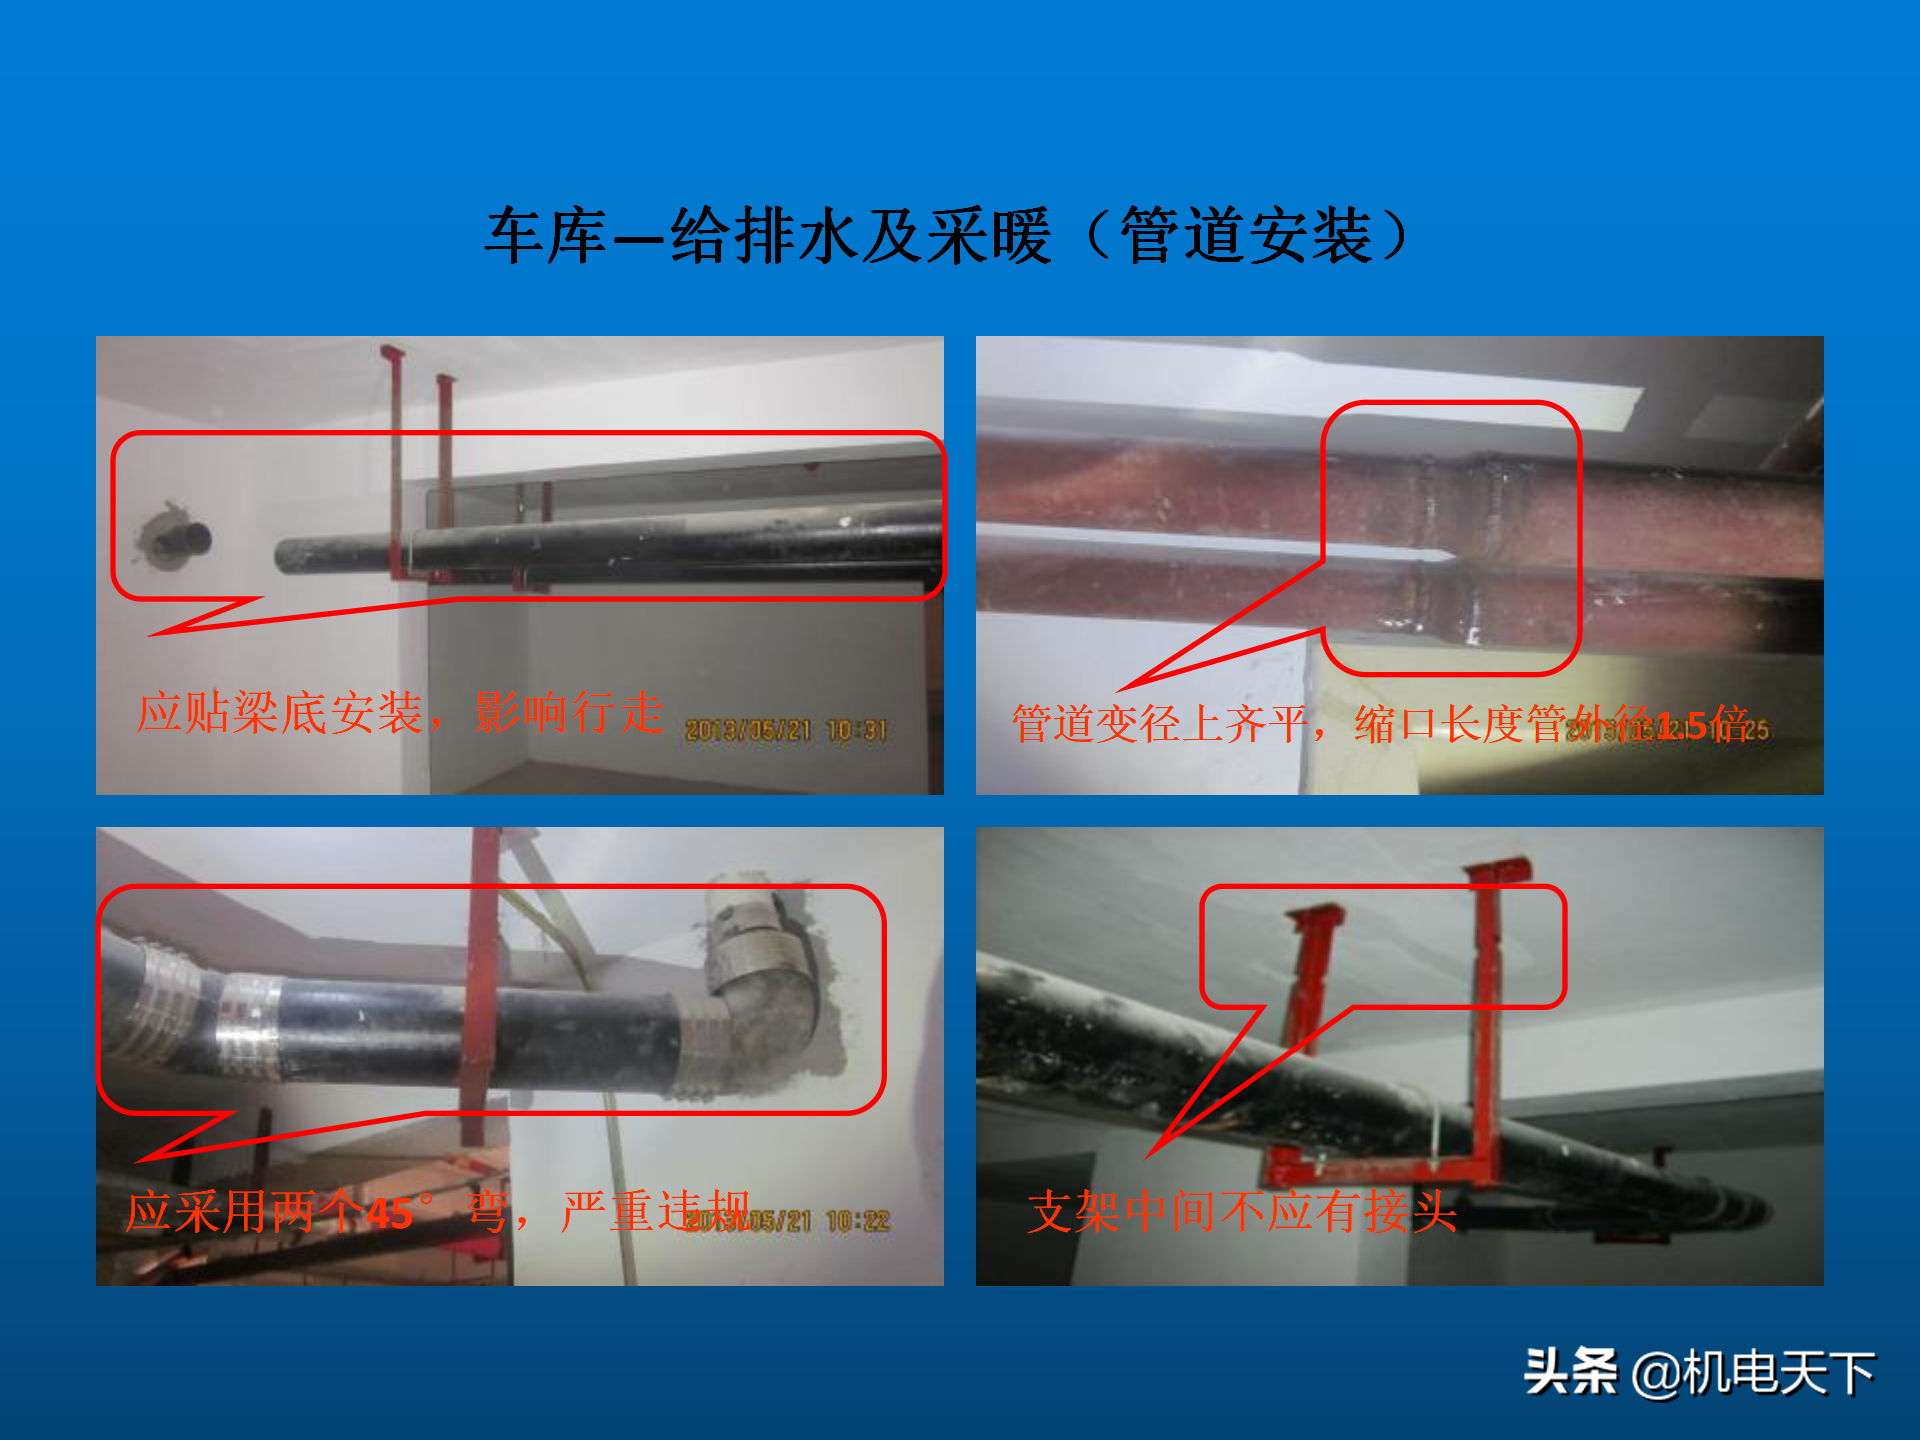 高清图片展示机电安装施工质量通病案例PPT